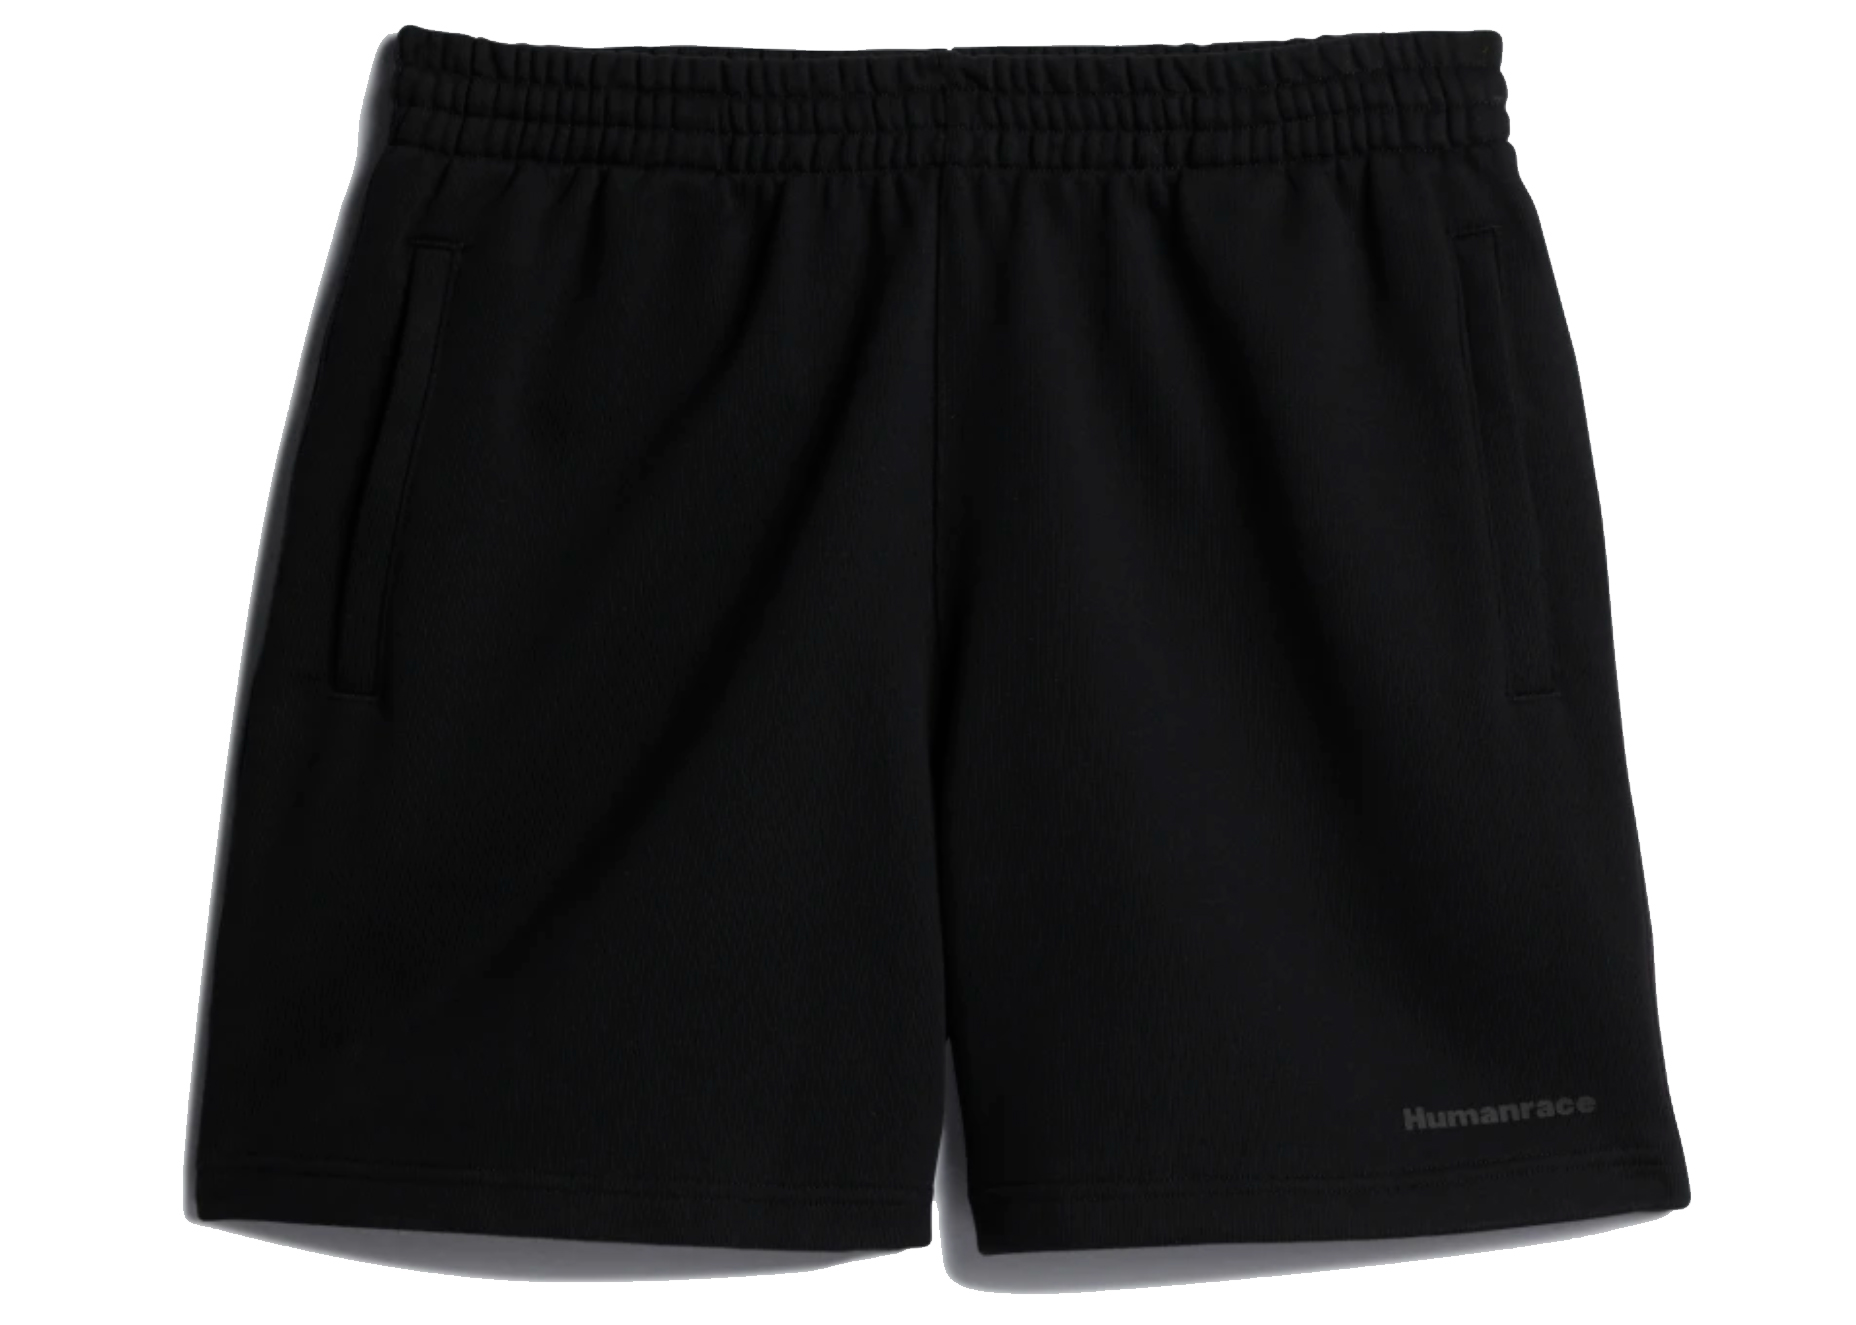 adidas x Pharrell Williams Basics Shorts Black - FW20